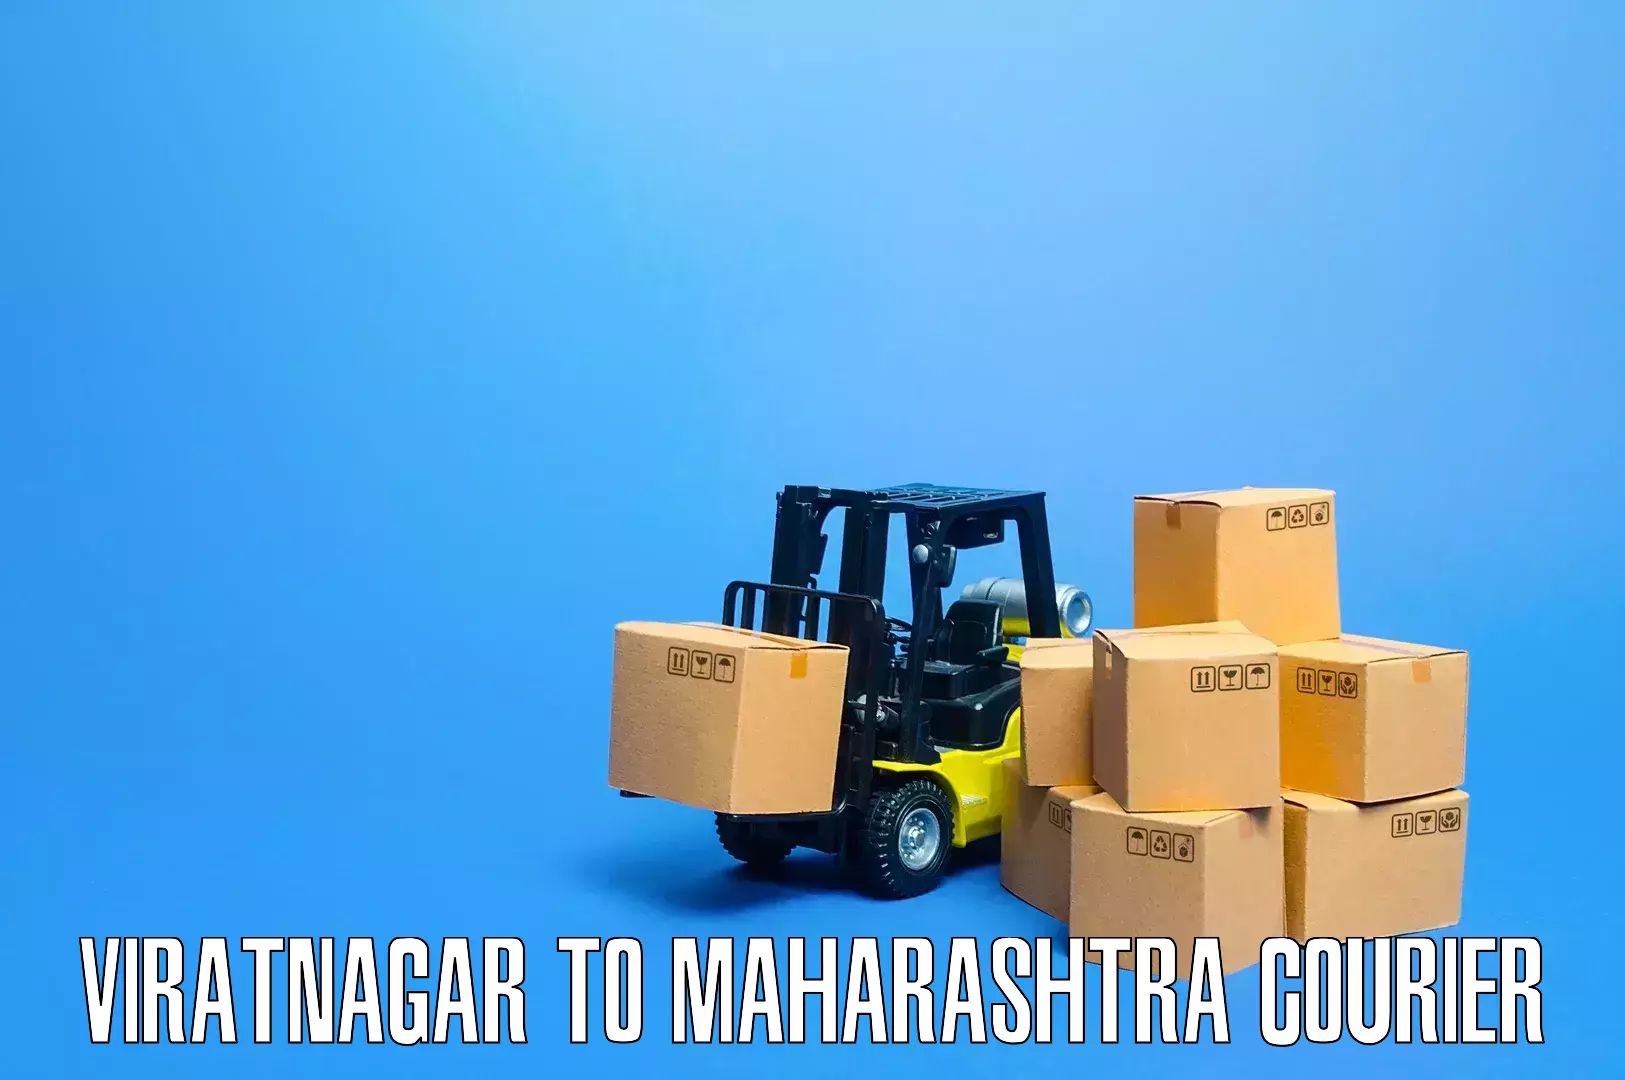 Specialized moving company Viratnagar to Maharashtra